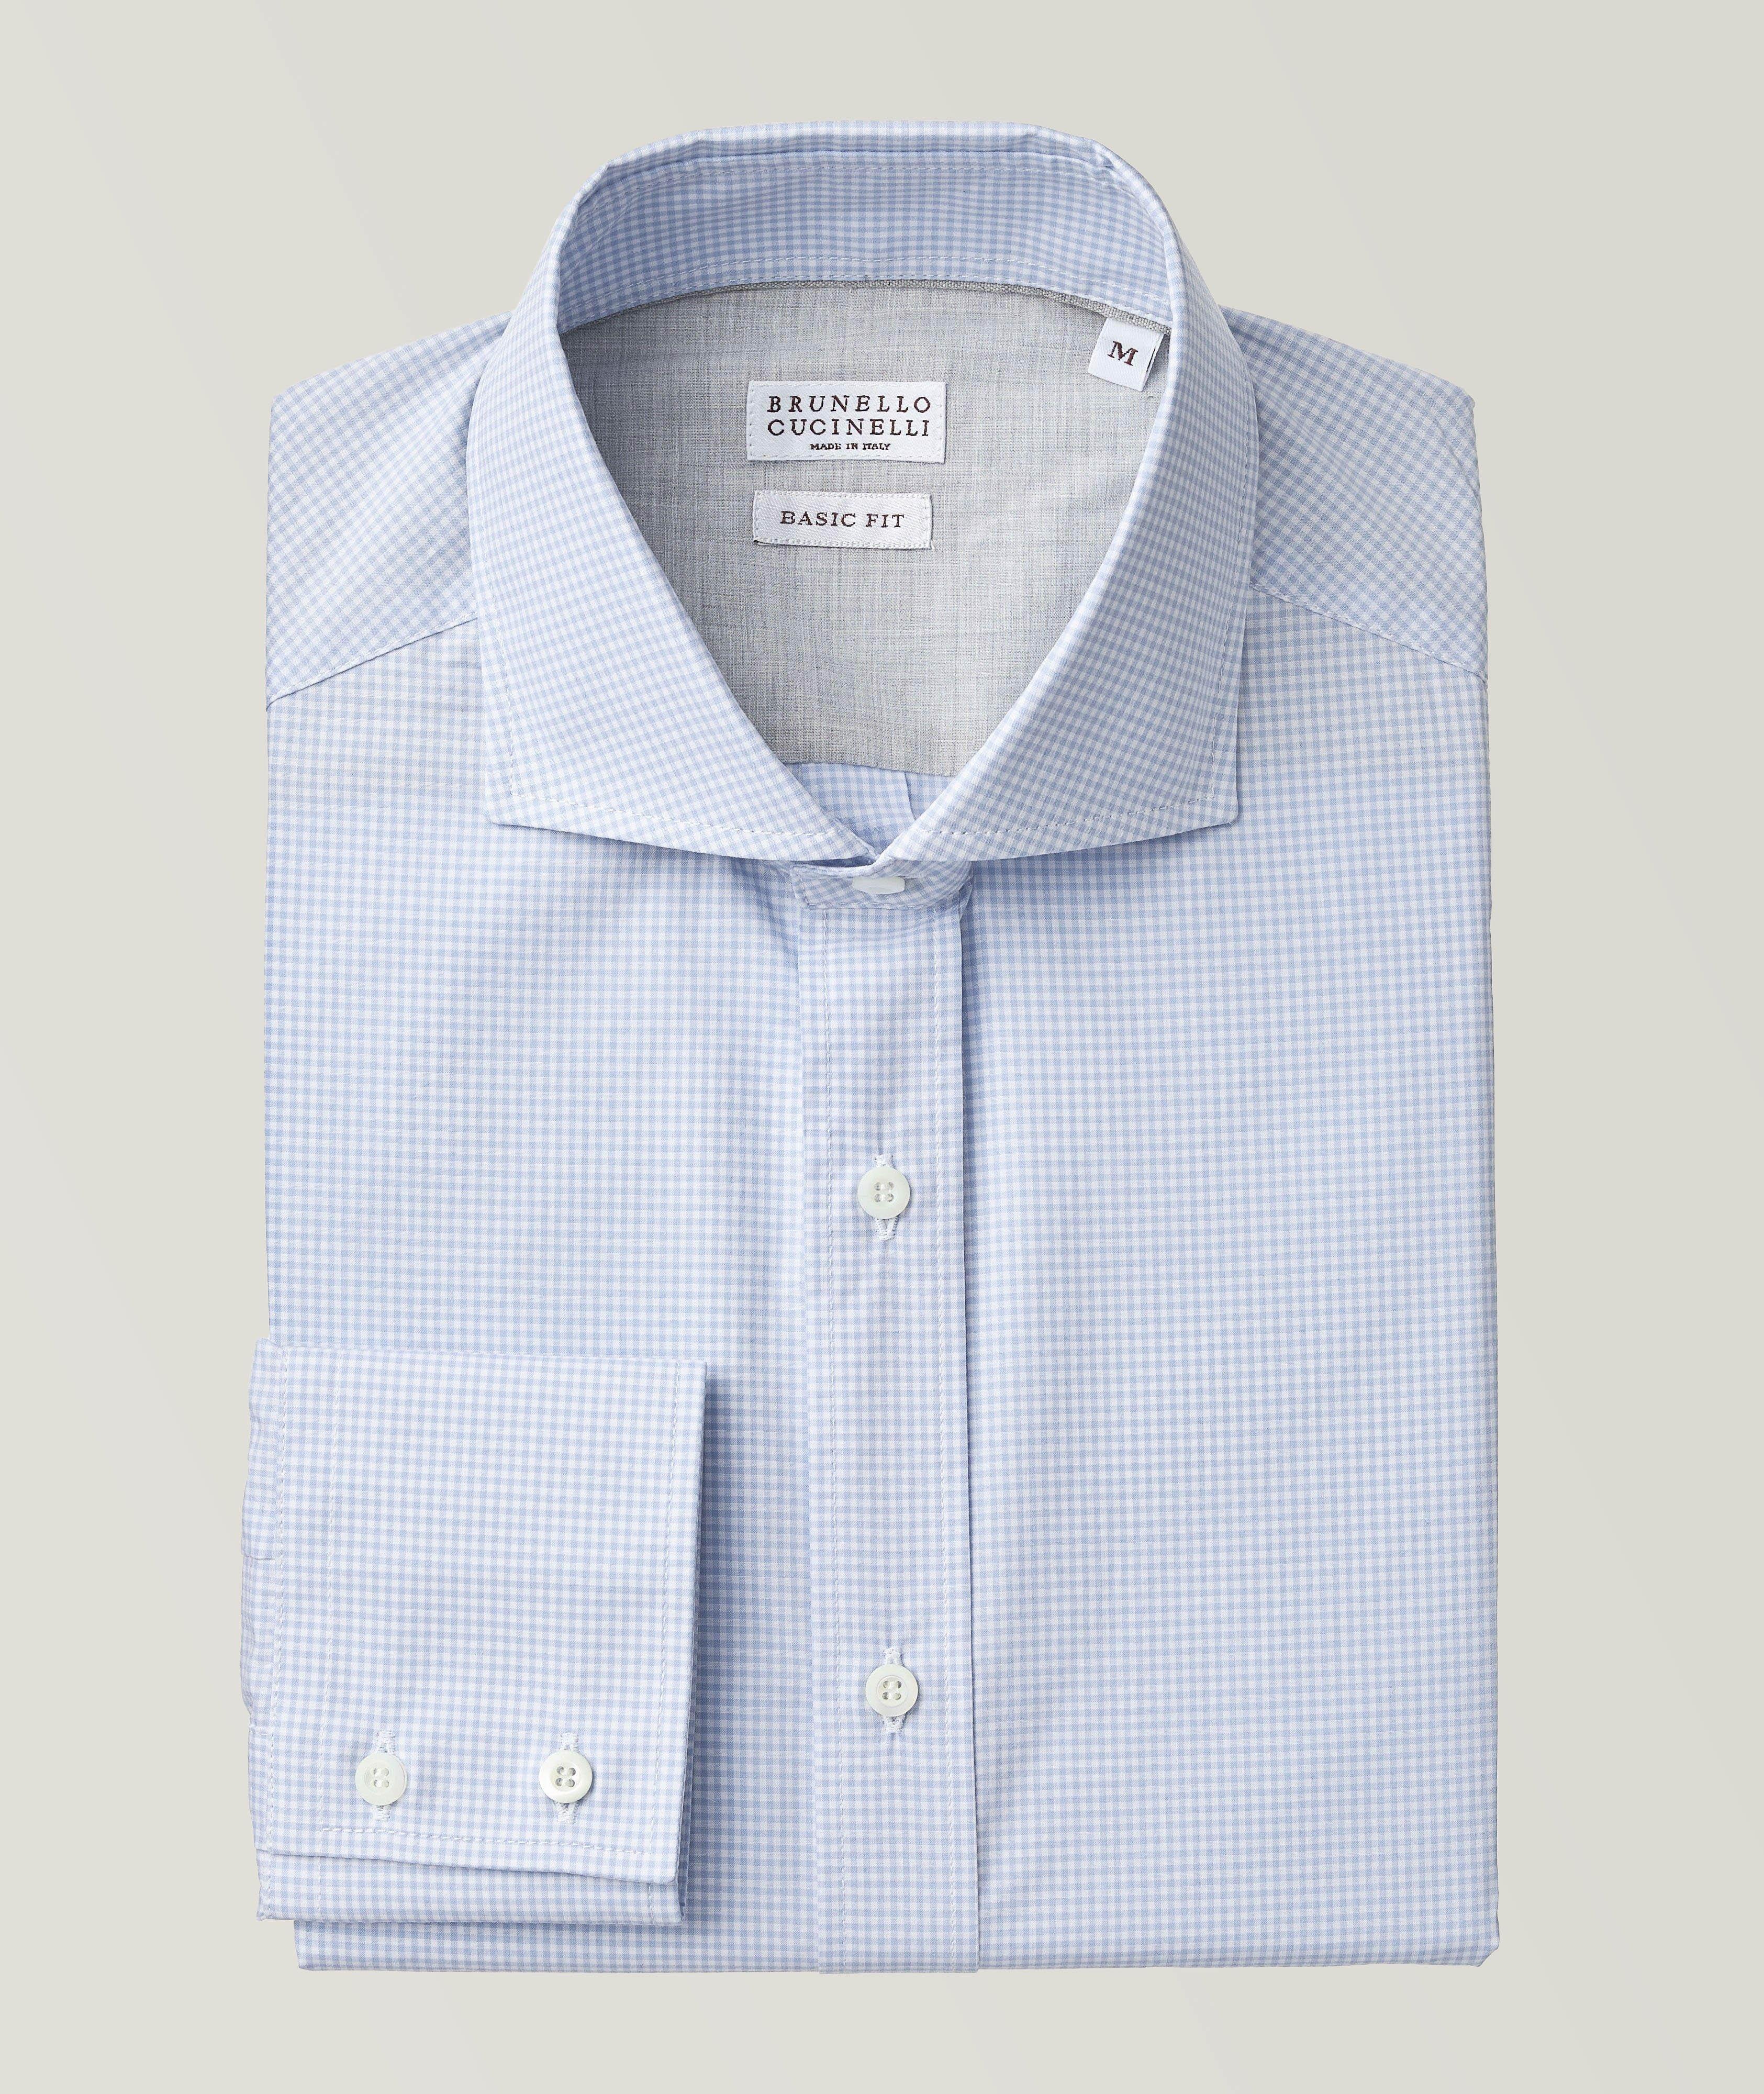 Basic-Fit Check Pattern Cotton Shirt image 0